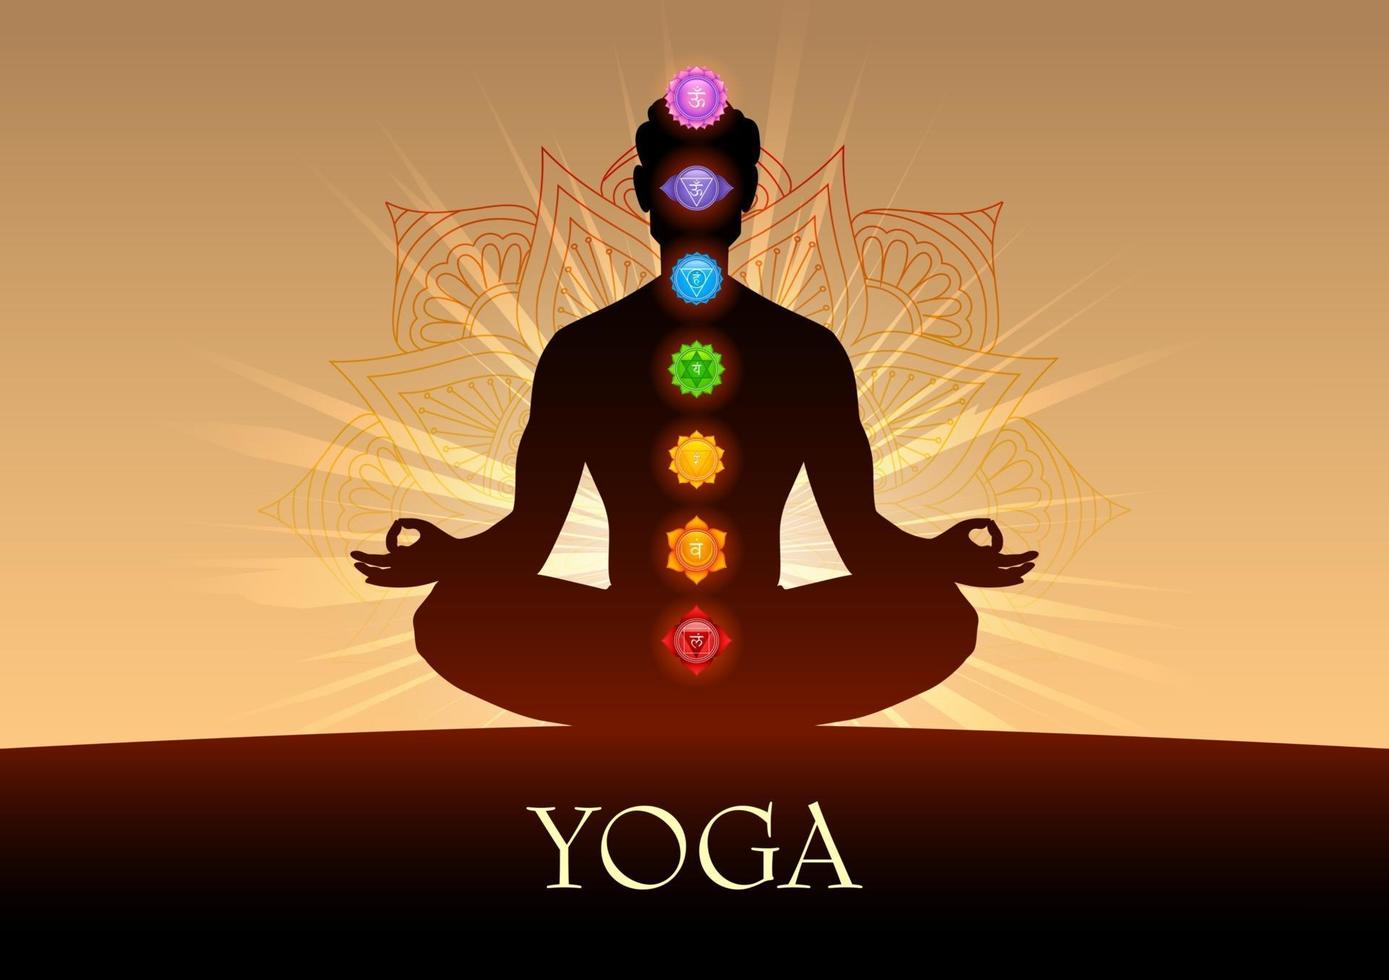 illustratie van een man die asana doet voor internationale yogadag op 21 juni met tantra sapta chakra, wat betekent zeven meditatiewiel vector